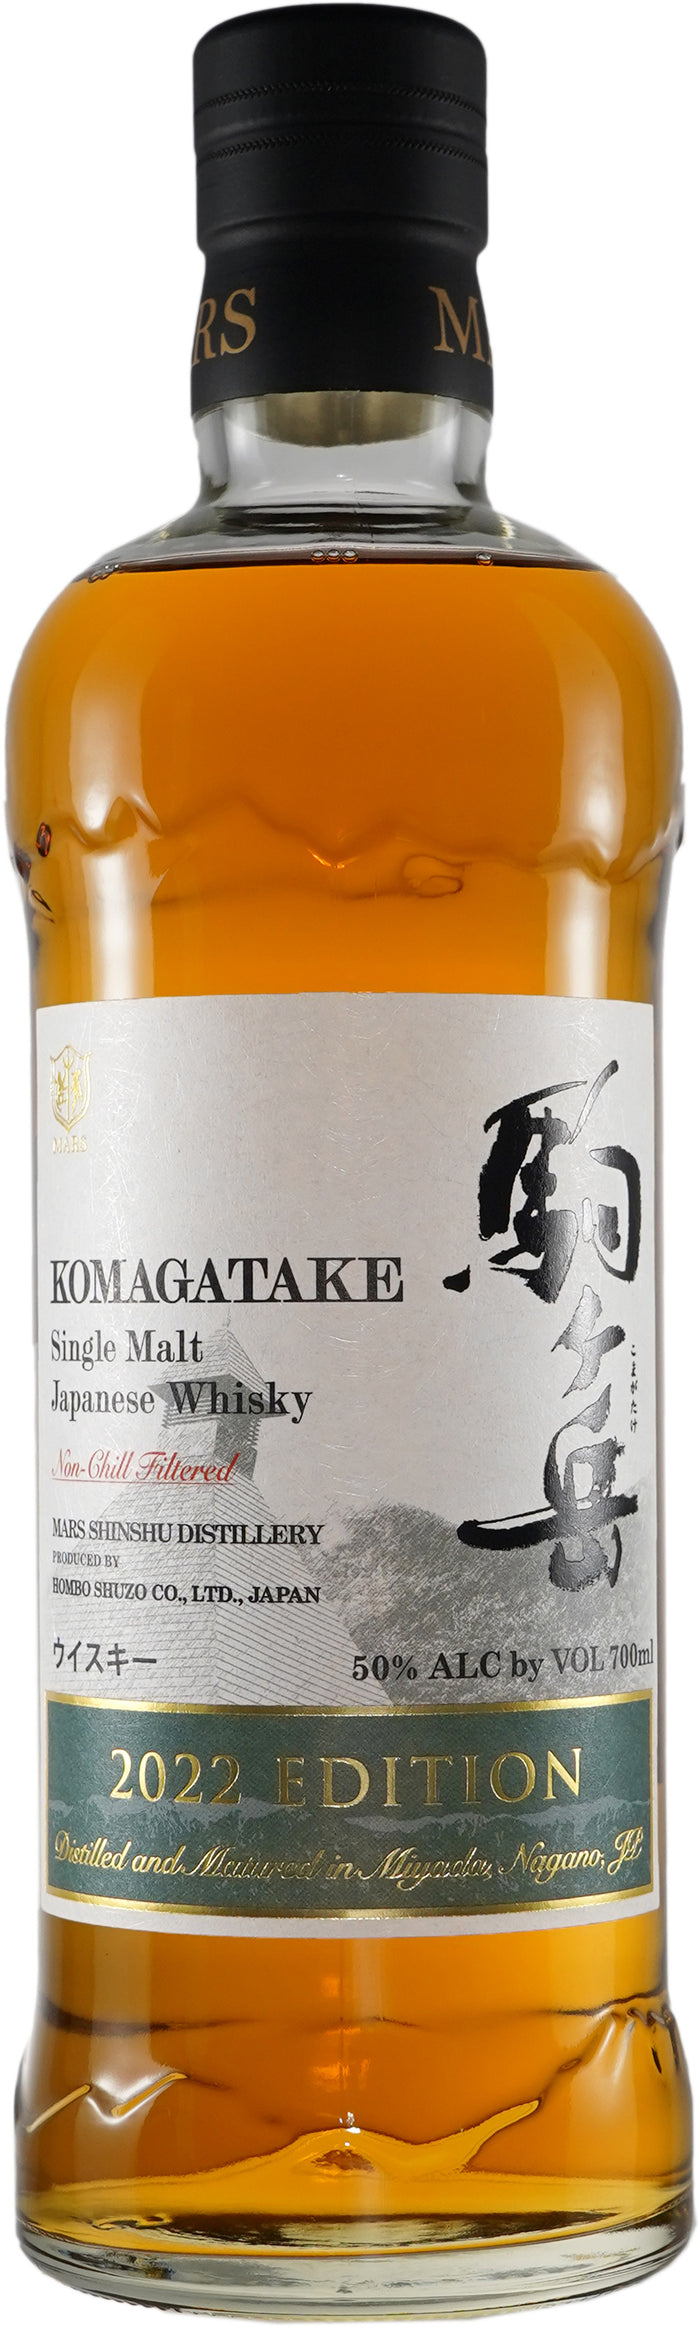 Komagatake Tsunuki Distillery Aging Single Malt Bottled 2022 Japanese Whisky